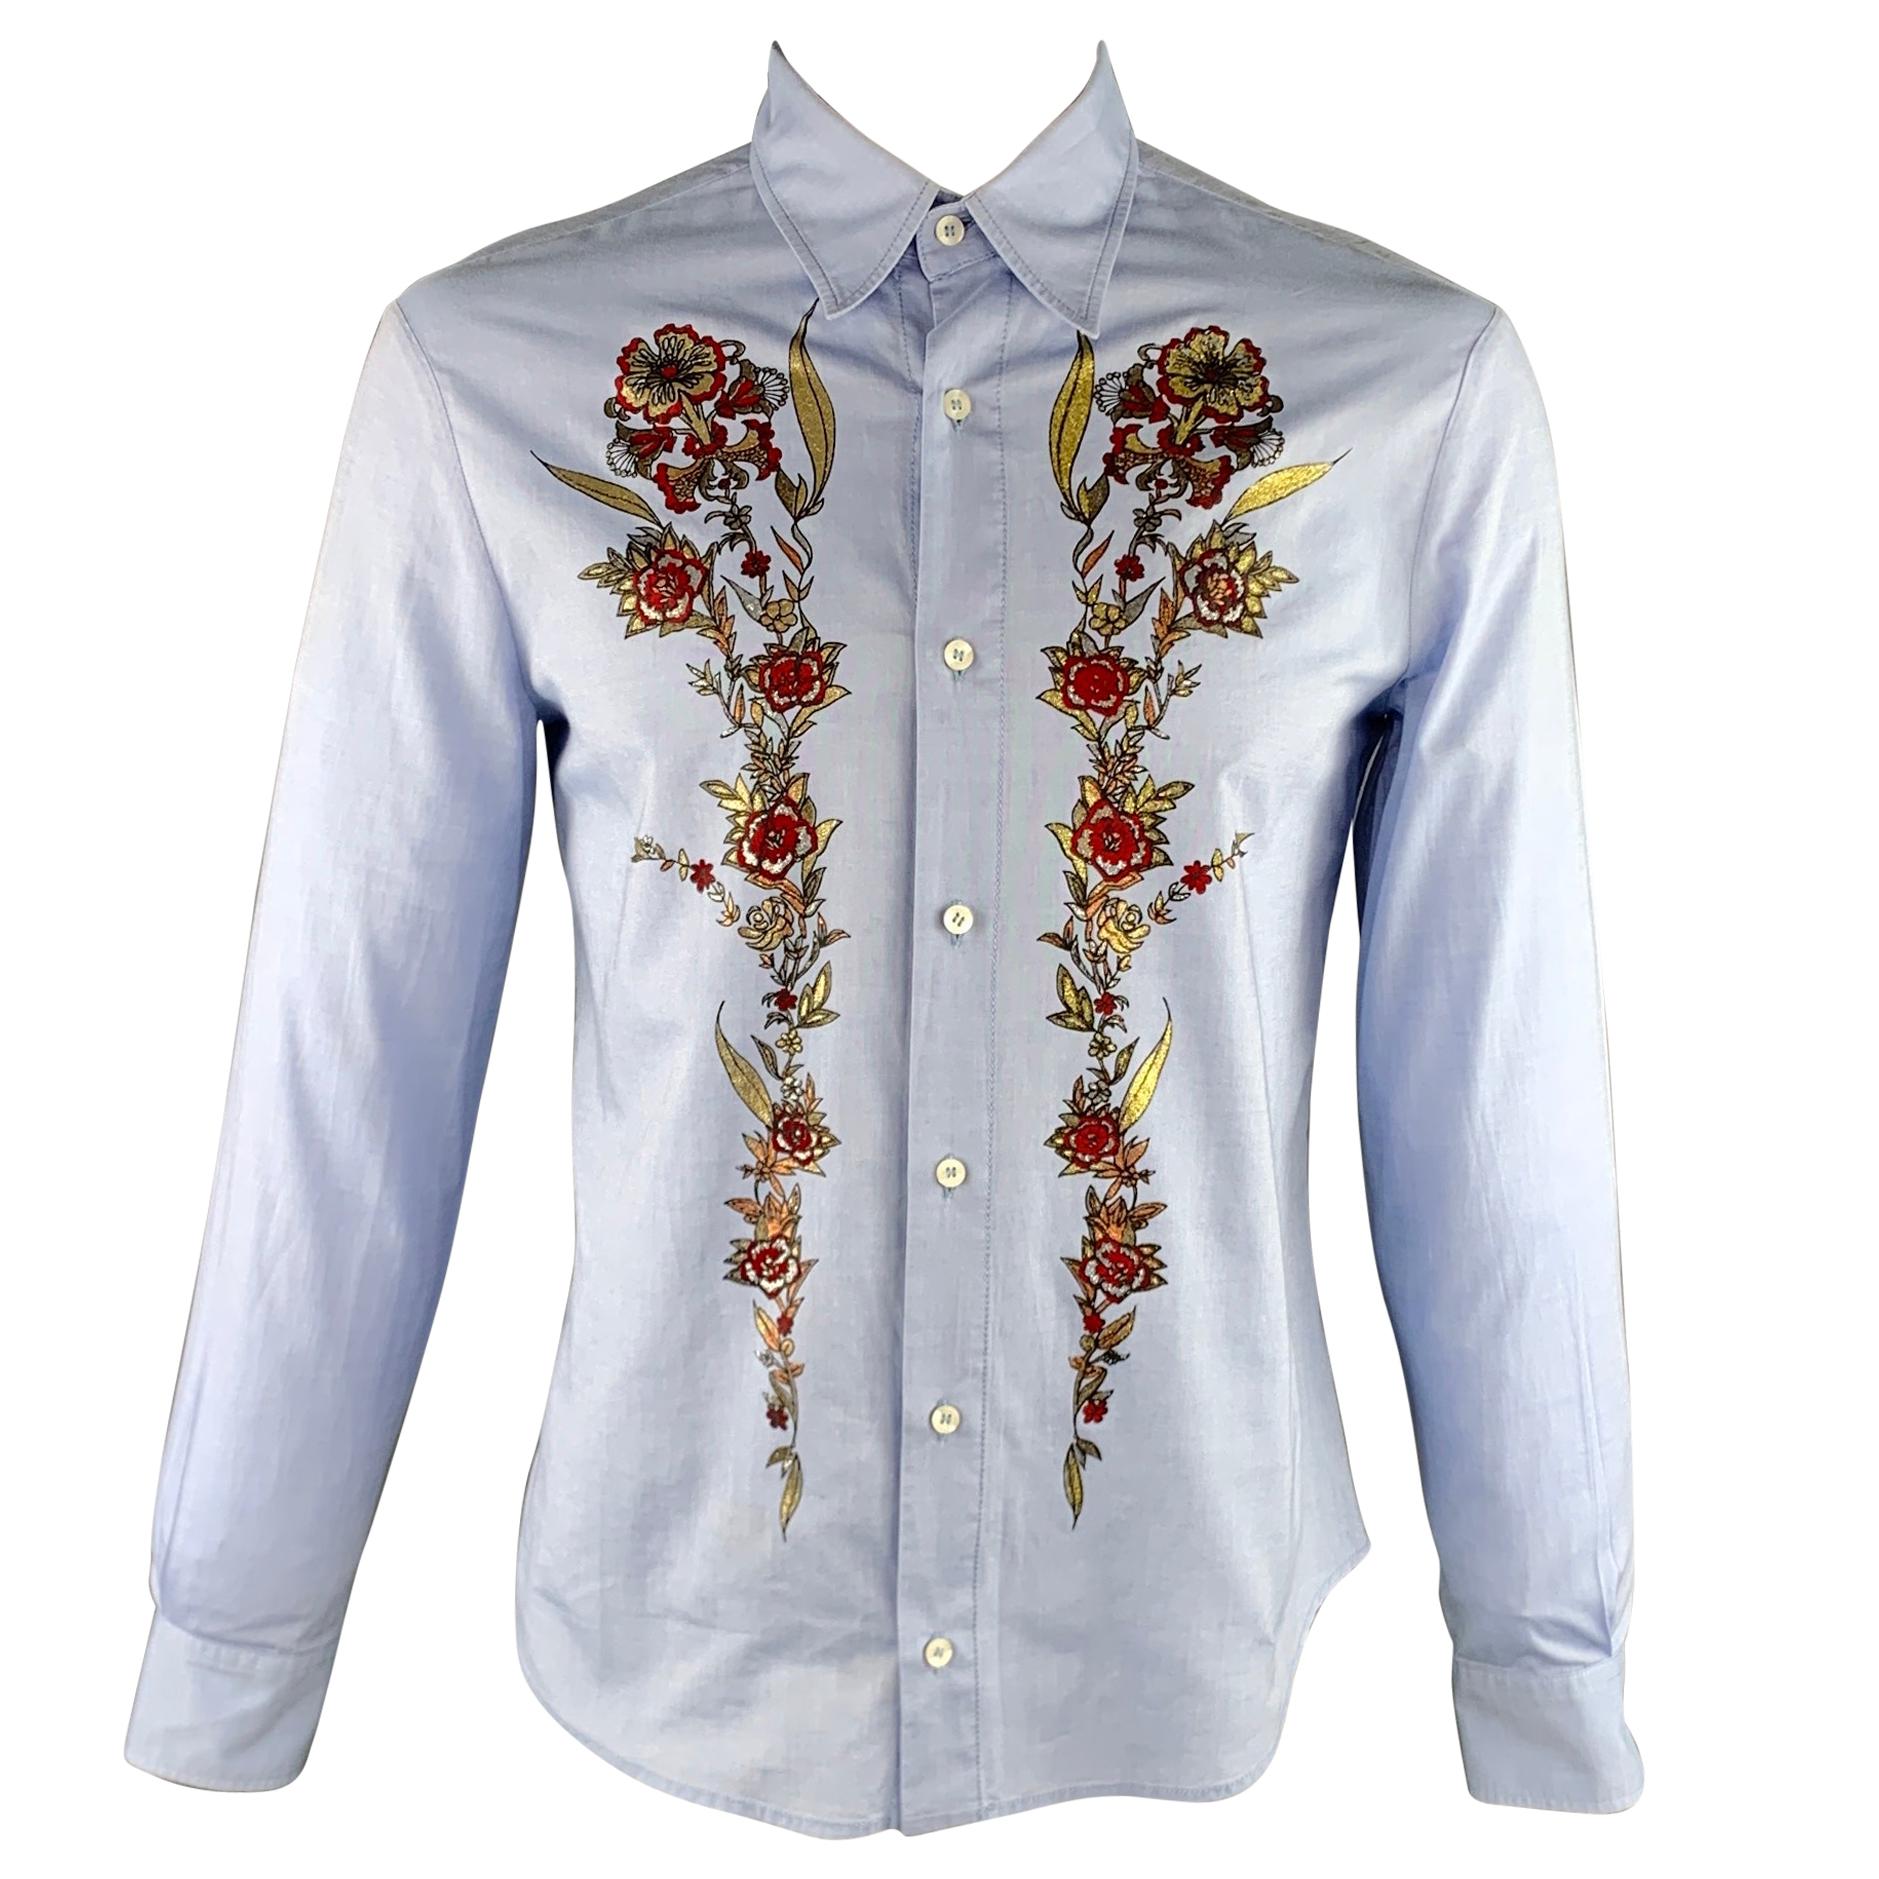 JUST CAVALLI Size XL Light Blue Embellishment Cotton Button Up Long Sleeve Shirt